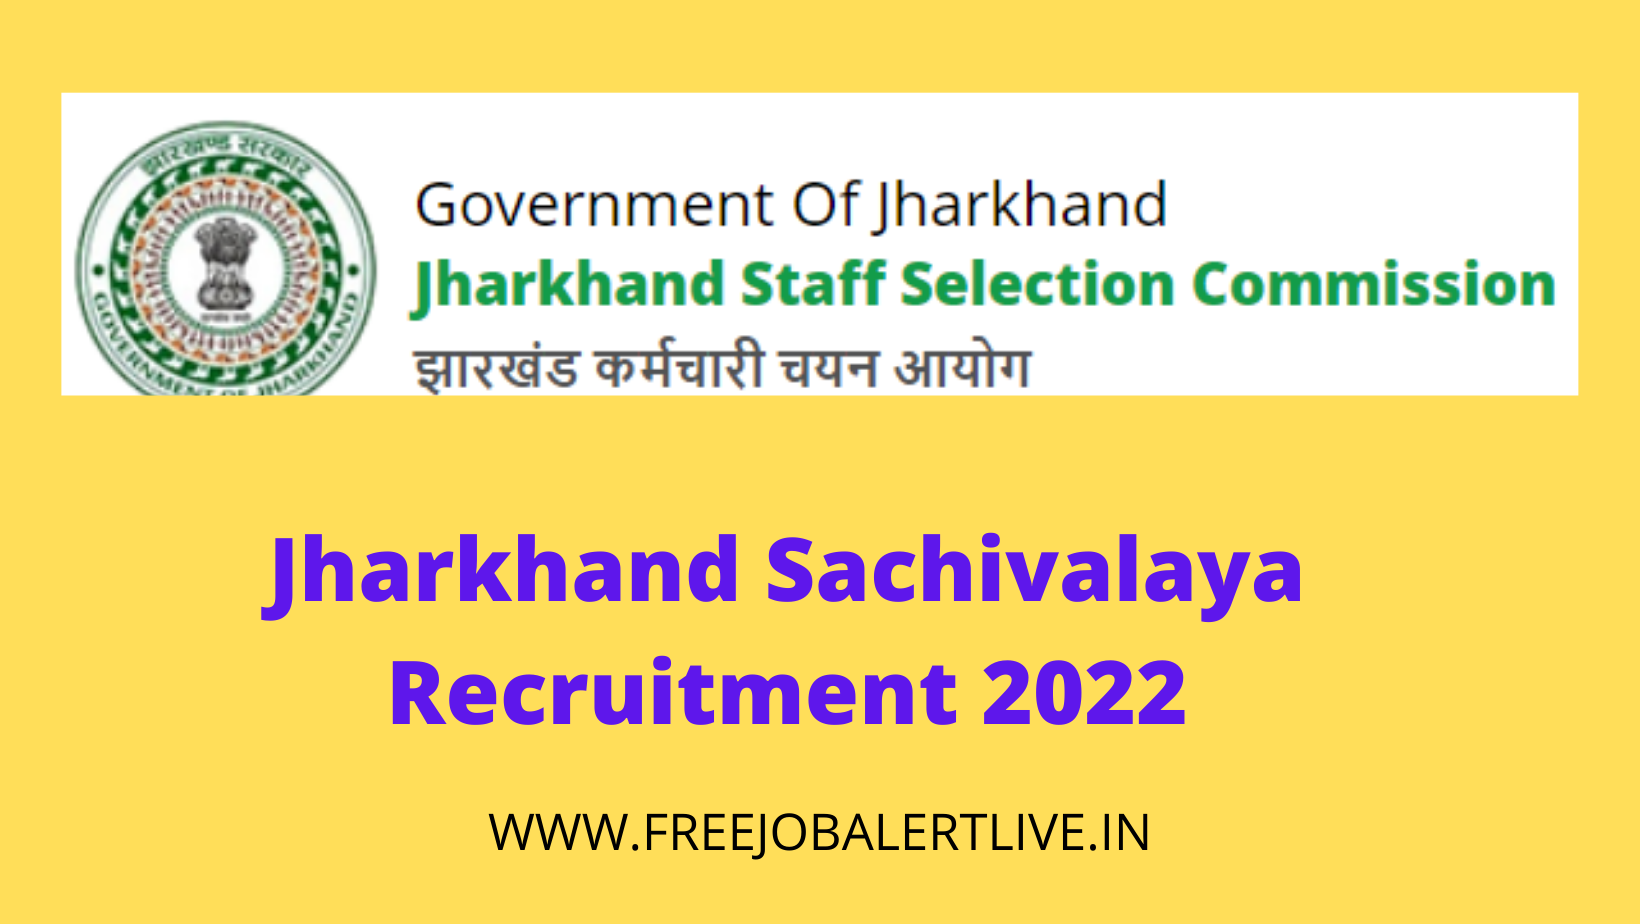 Jharkhand Sachivalaya Recruitment 2022